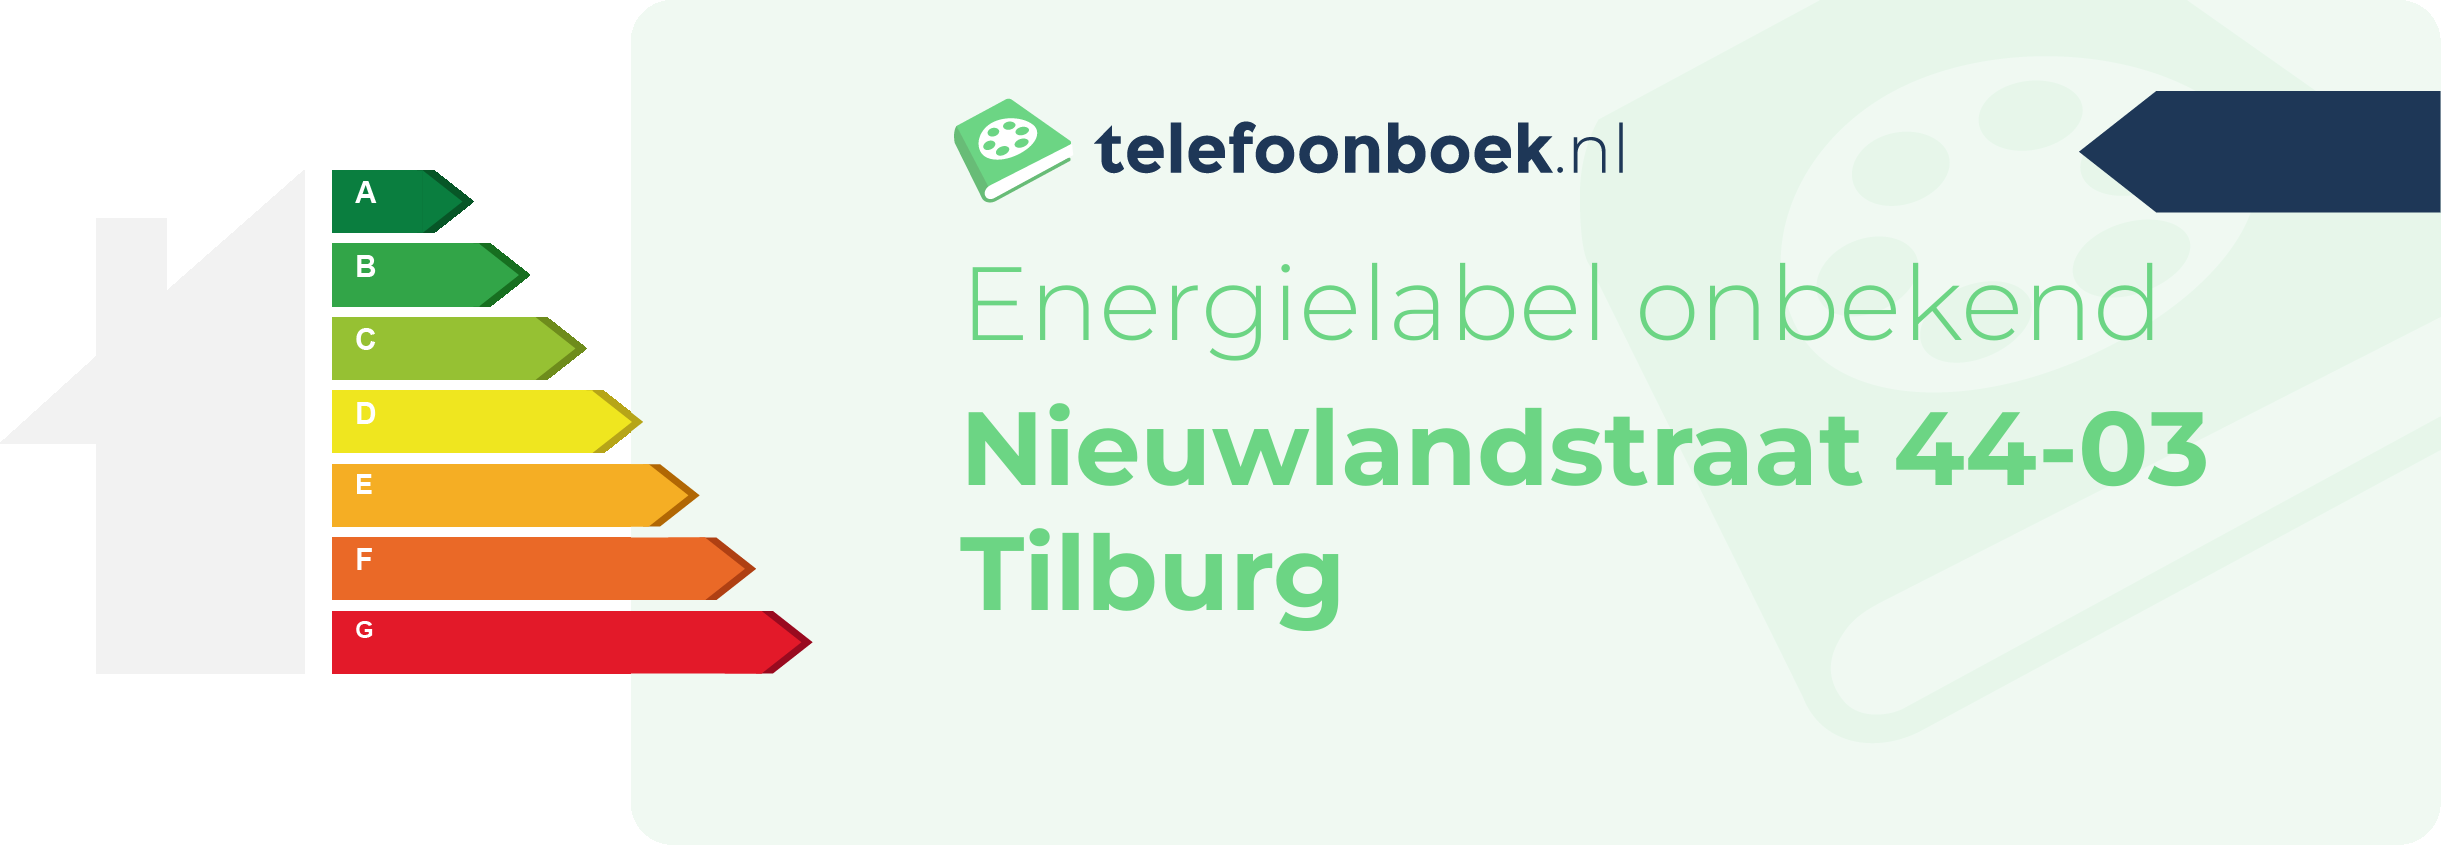 Energielabel Nieuwlandstraat 44-03 Tilburg